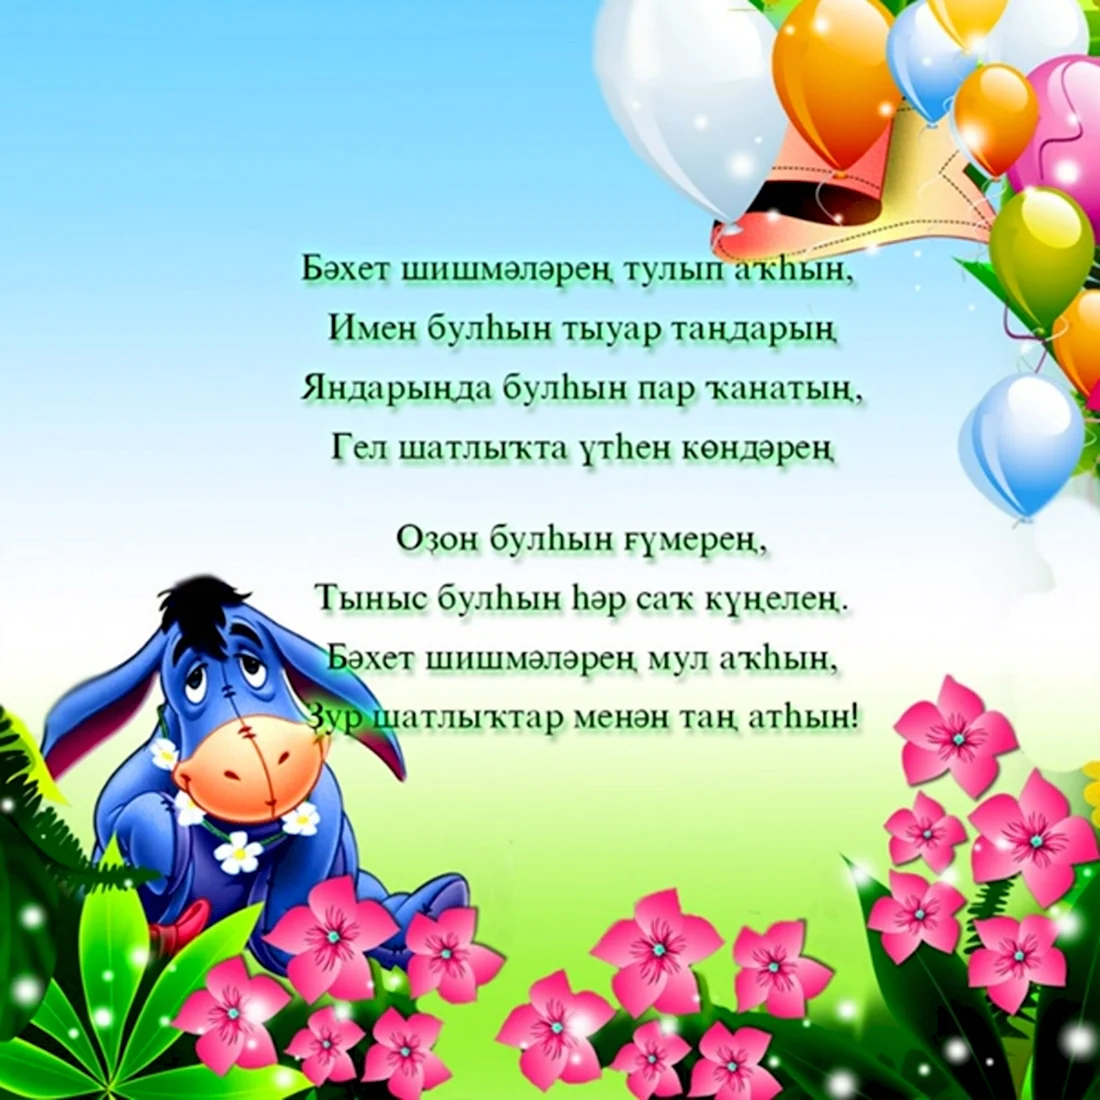 Поздравление с рождением ребенка на башкирском языке